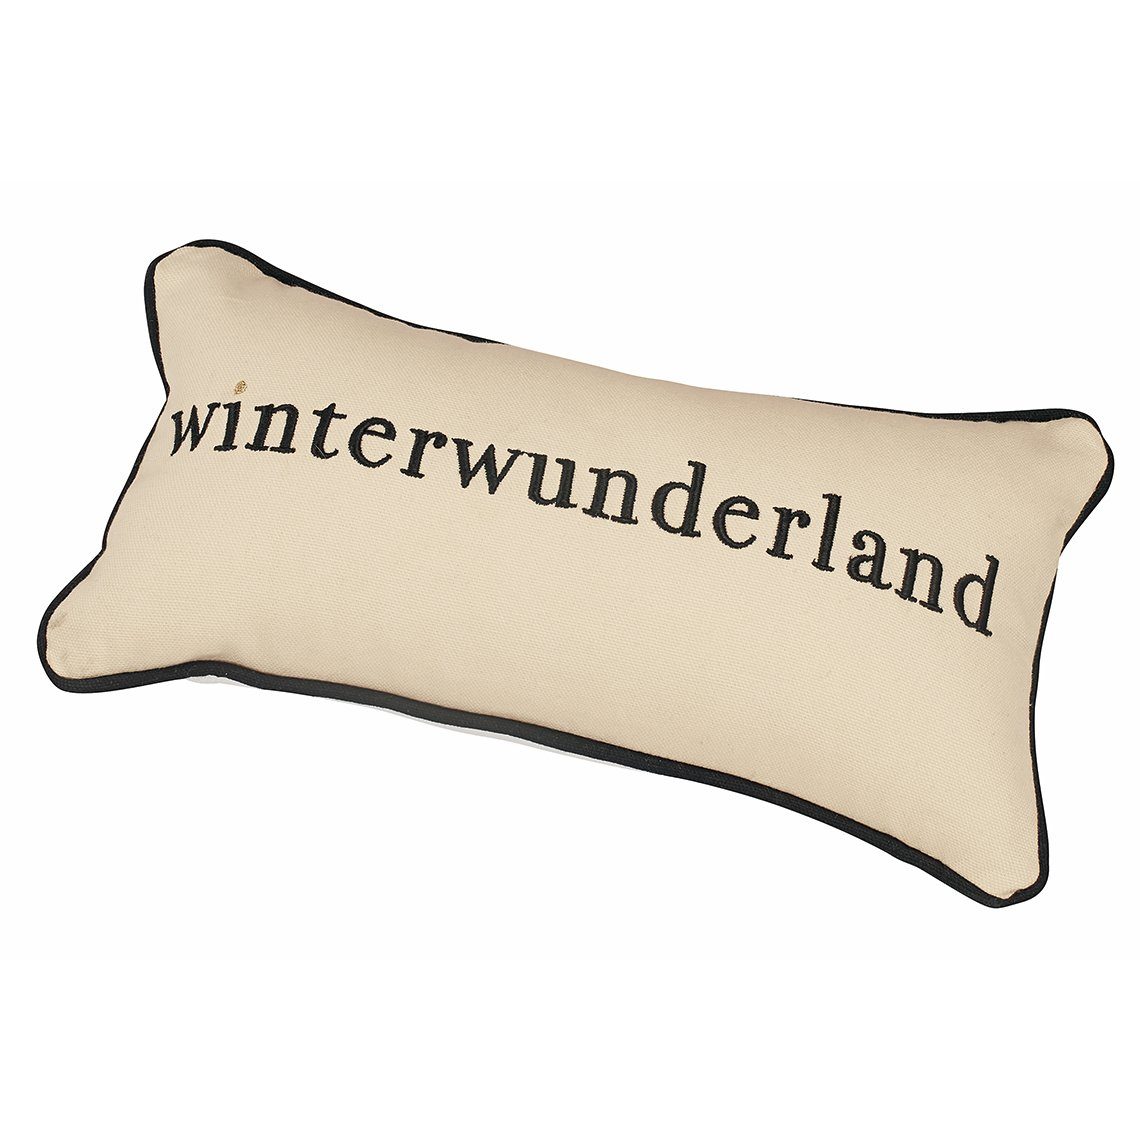 Räder Füllung "Winterwunderland" Design beige/weiß/gold mit 33x17cm Dekokissen Traumkissen